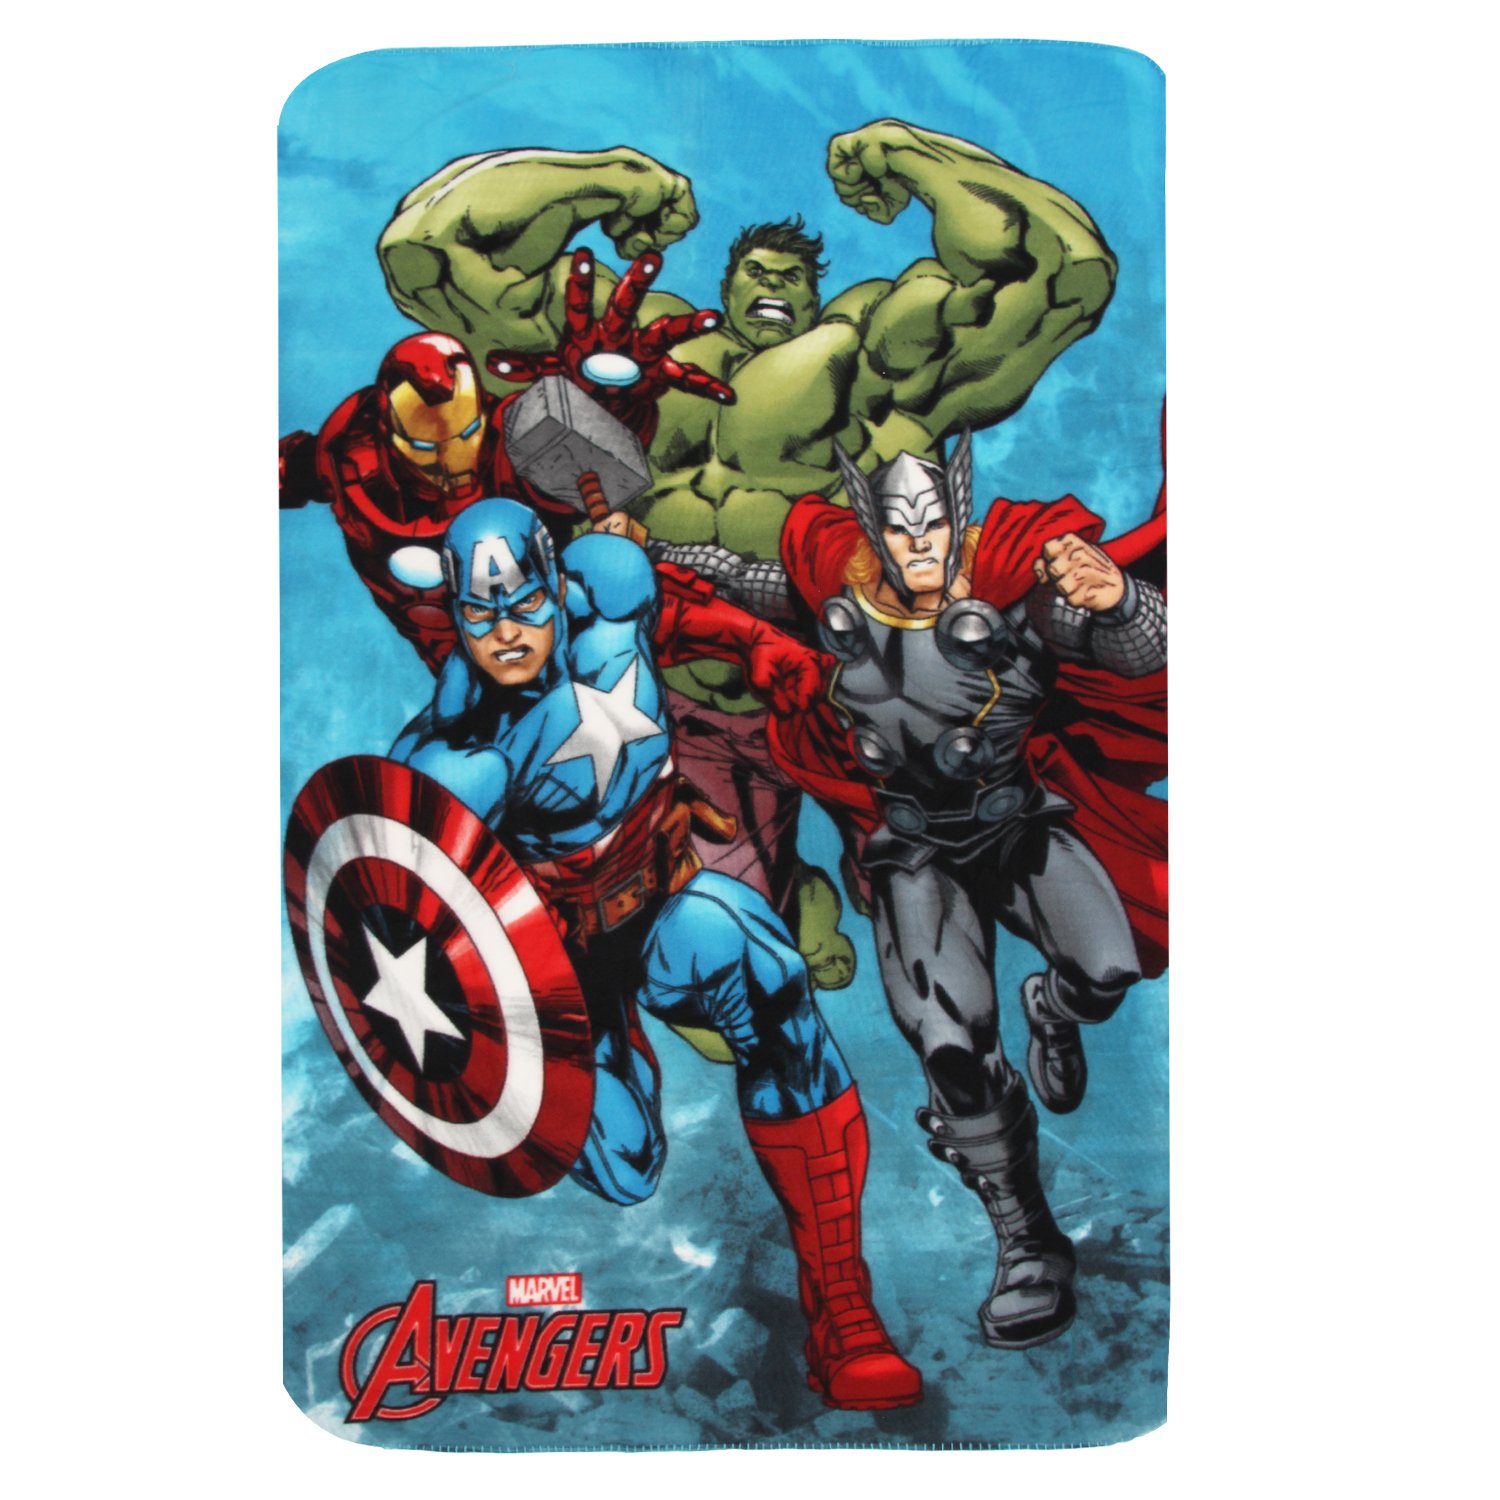 FCZLMMT-01.135 x 150 cm DFTY Avengers Fleece Blanket Throw Fleece Blanket Avengers Age of Ultron Sublimation Double Sided Hulk Ironman Captain America